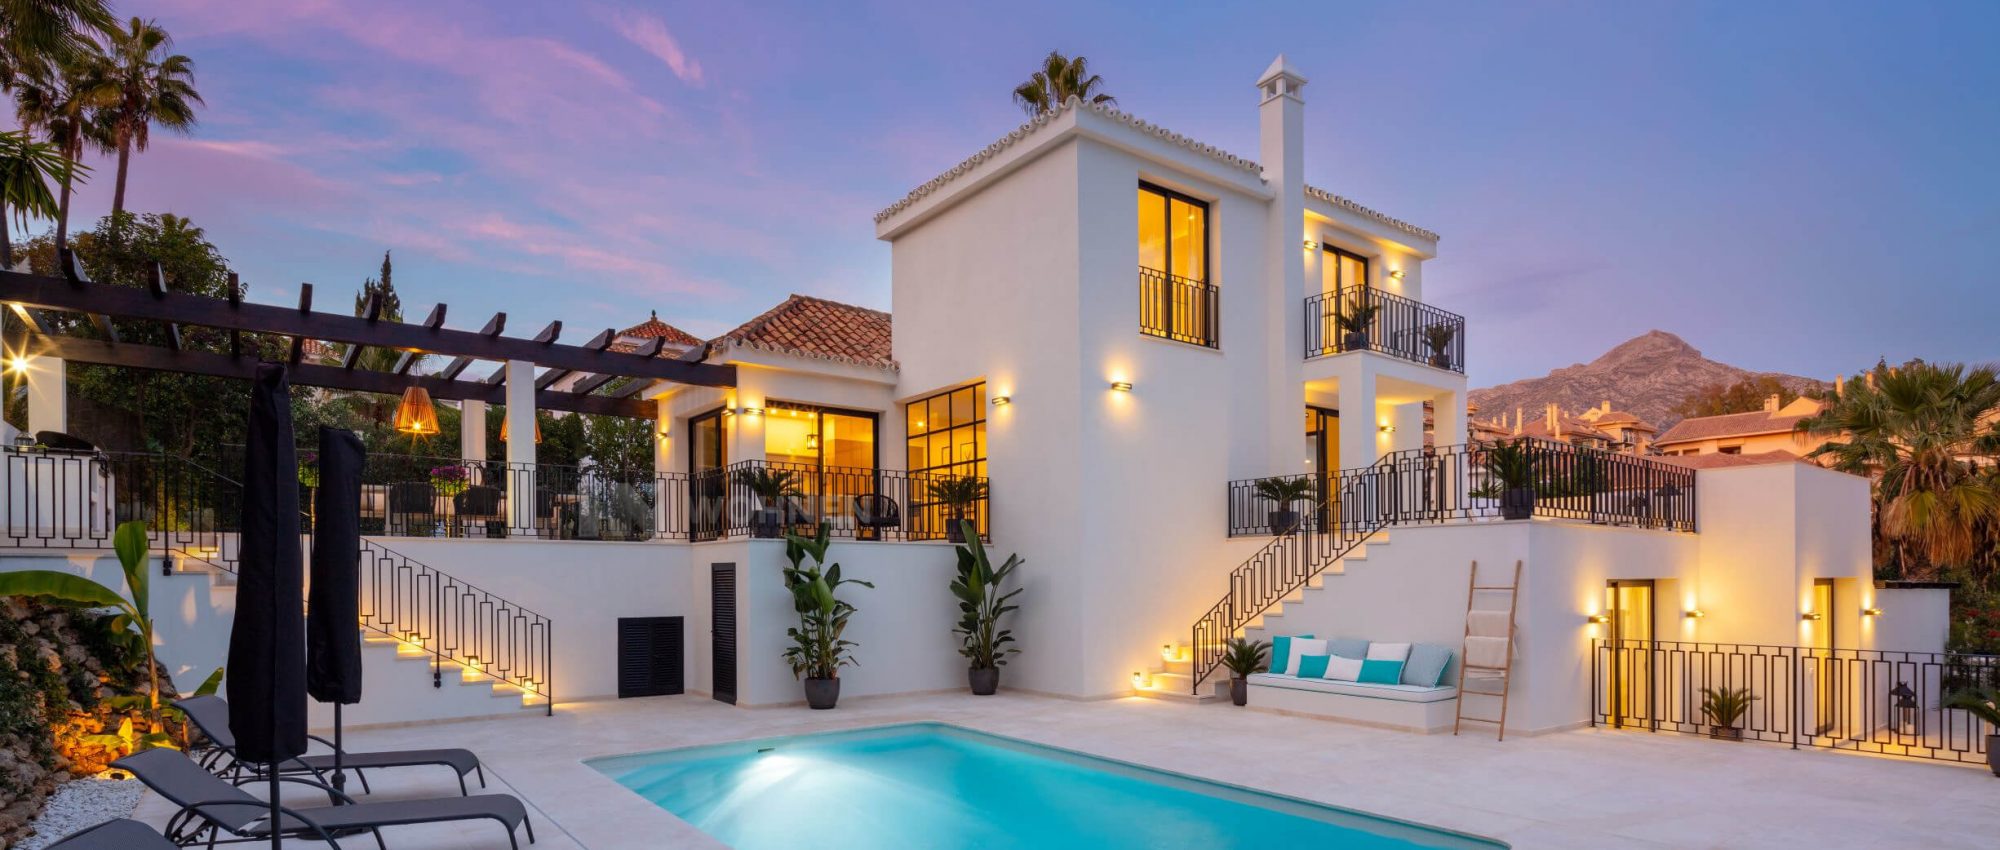 Schöne Villa in einer geschlossene Wohnanlage in der Nähe von Puerto Banus und Marbella